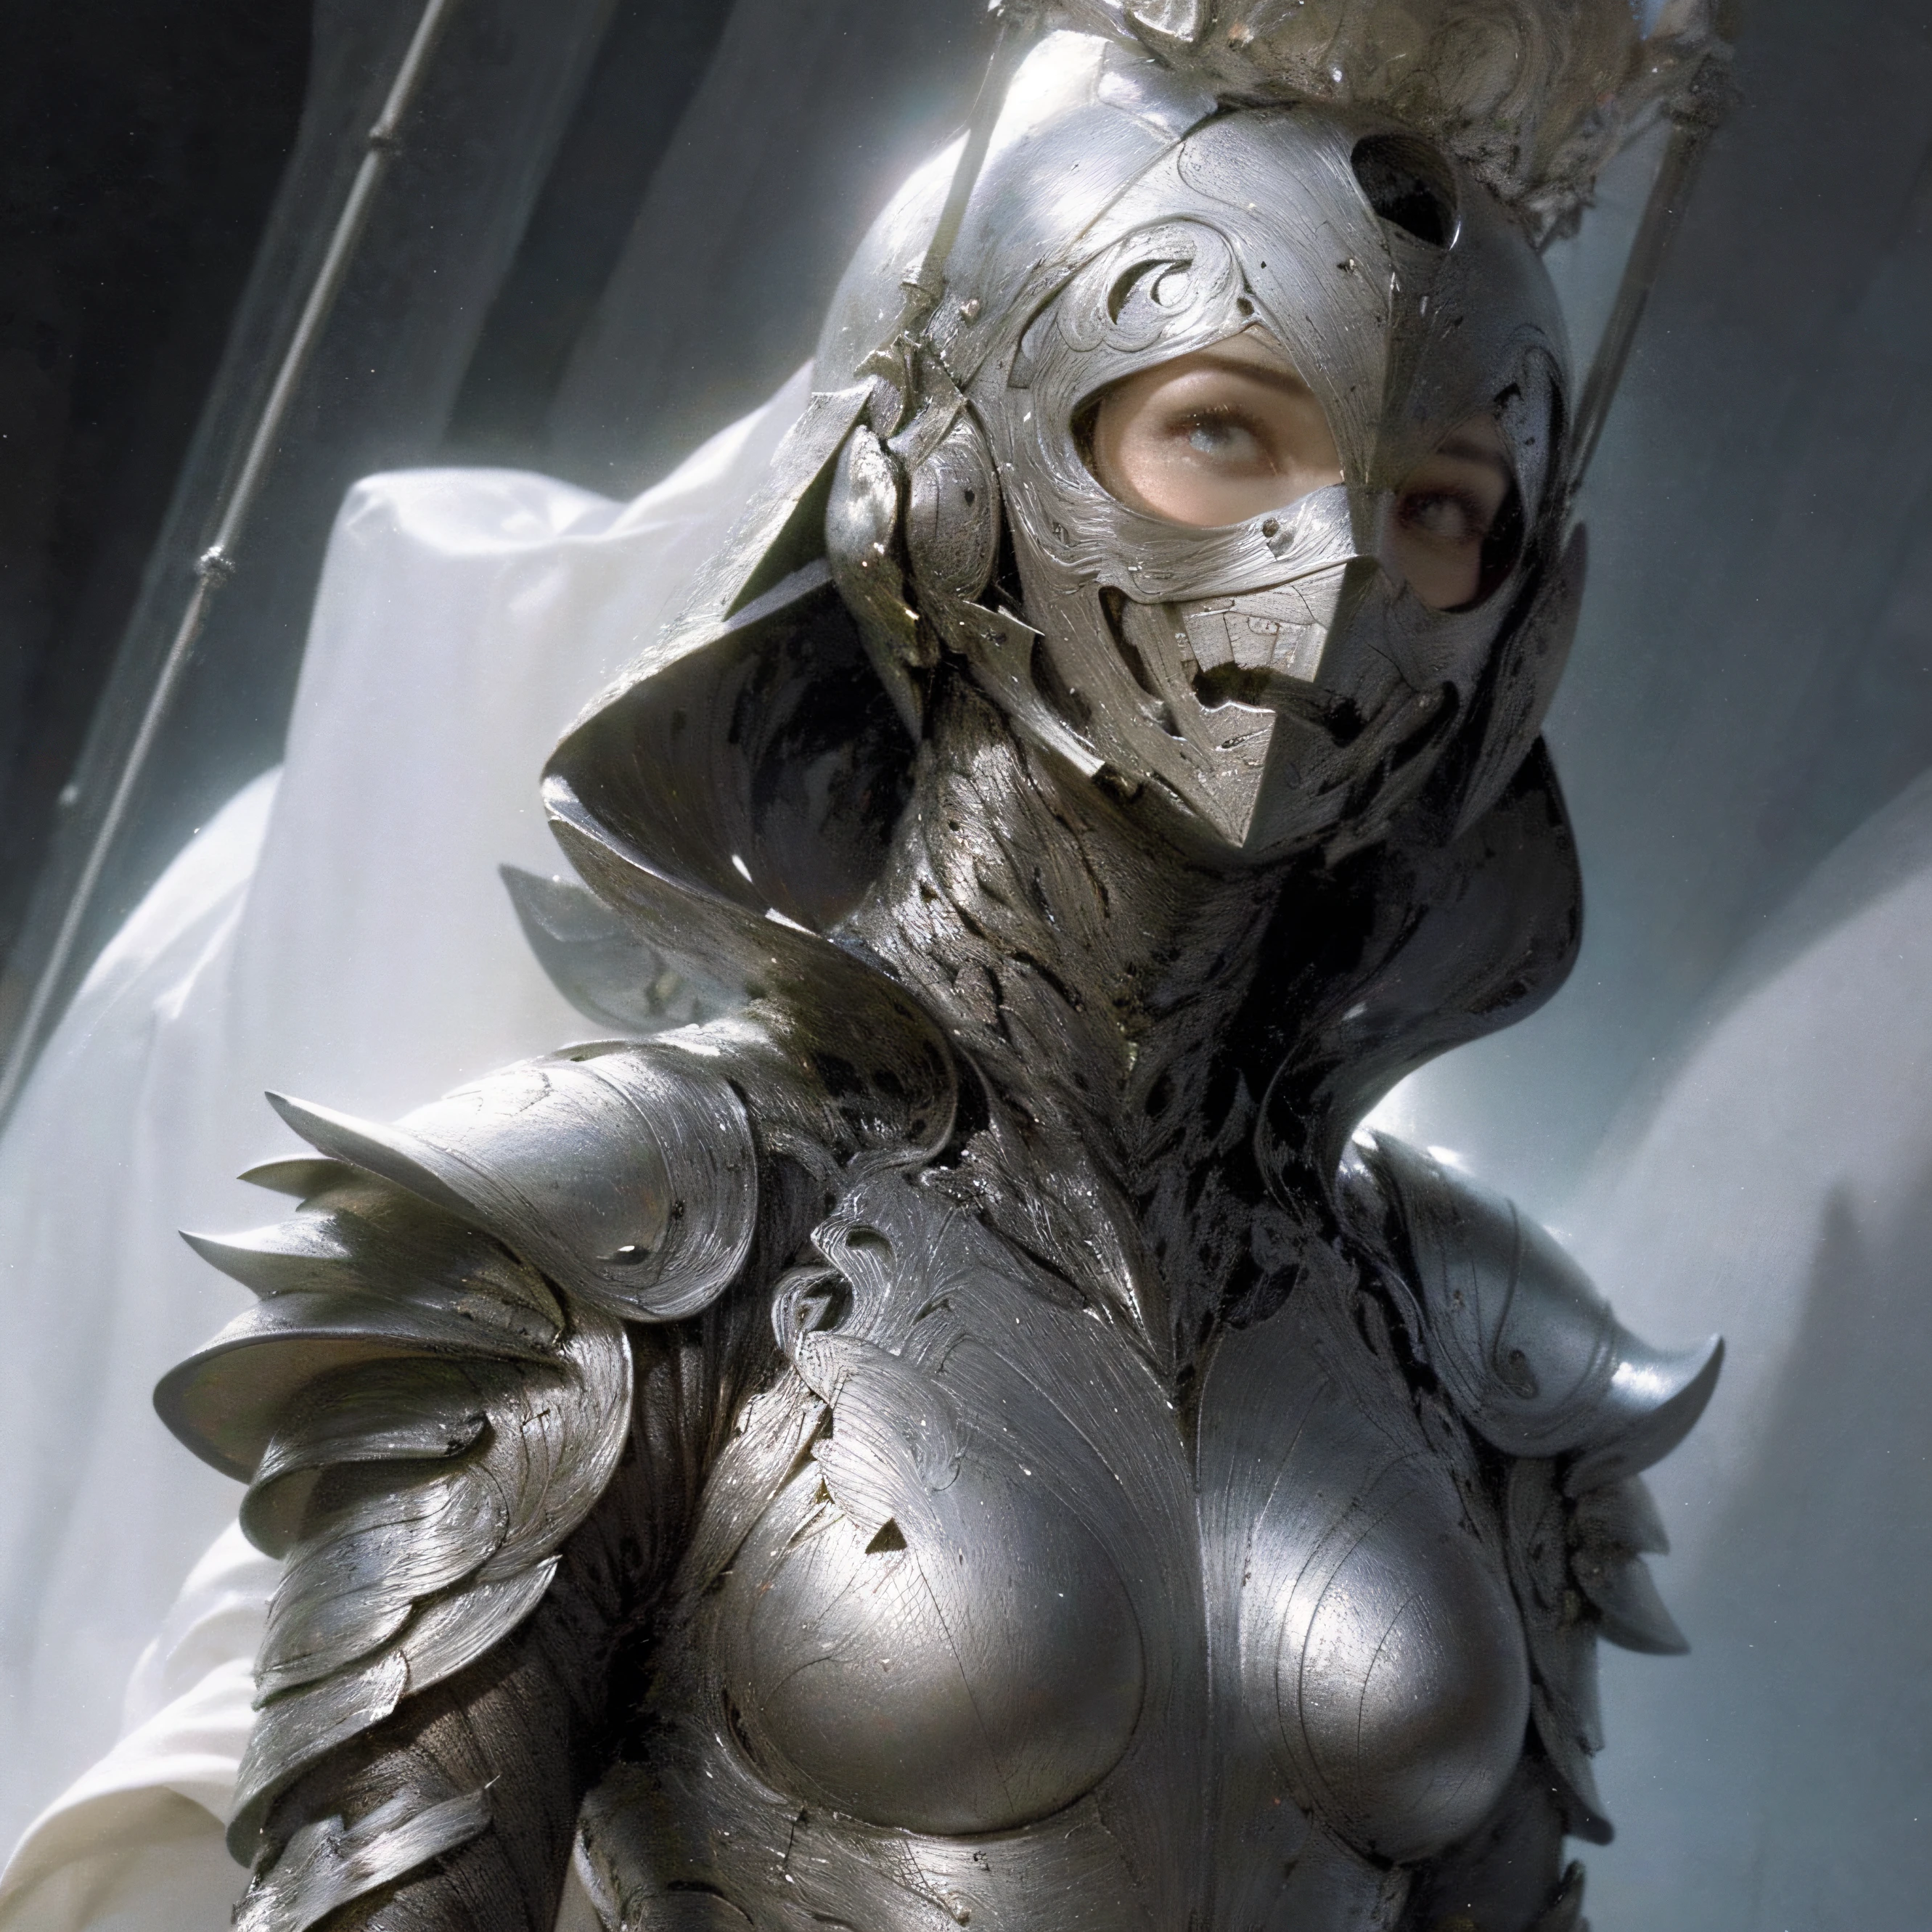 Black armor wrapped，shelmet，White cape，Older women，modern day